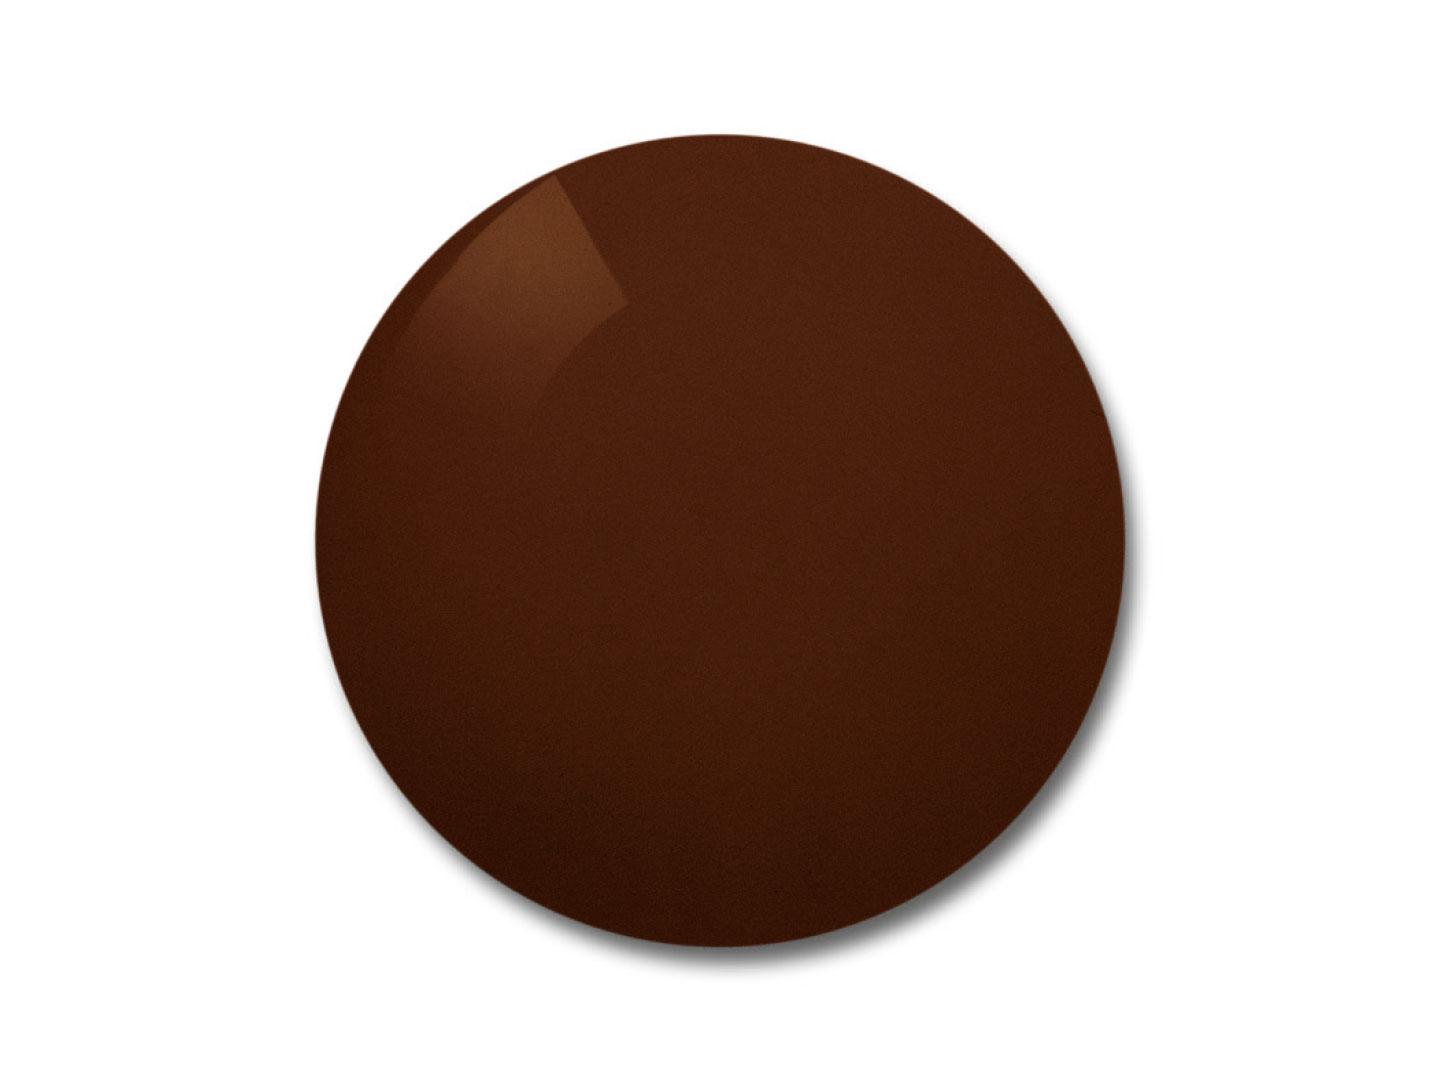 Illustration af ZEISS Skylet Sport-brilleglasset med mørkebrun farve 